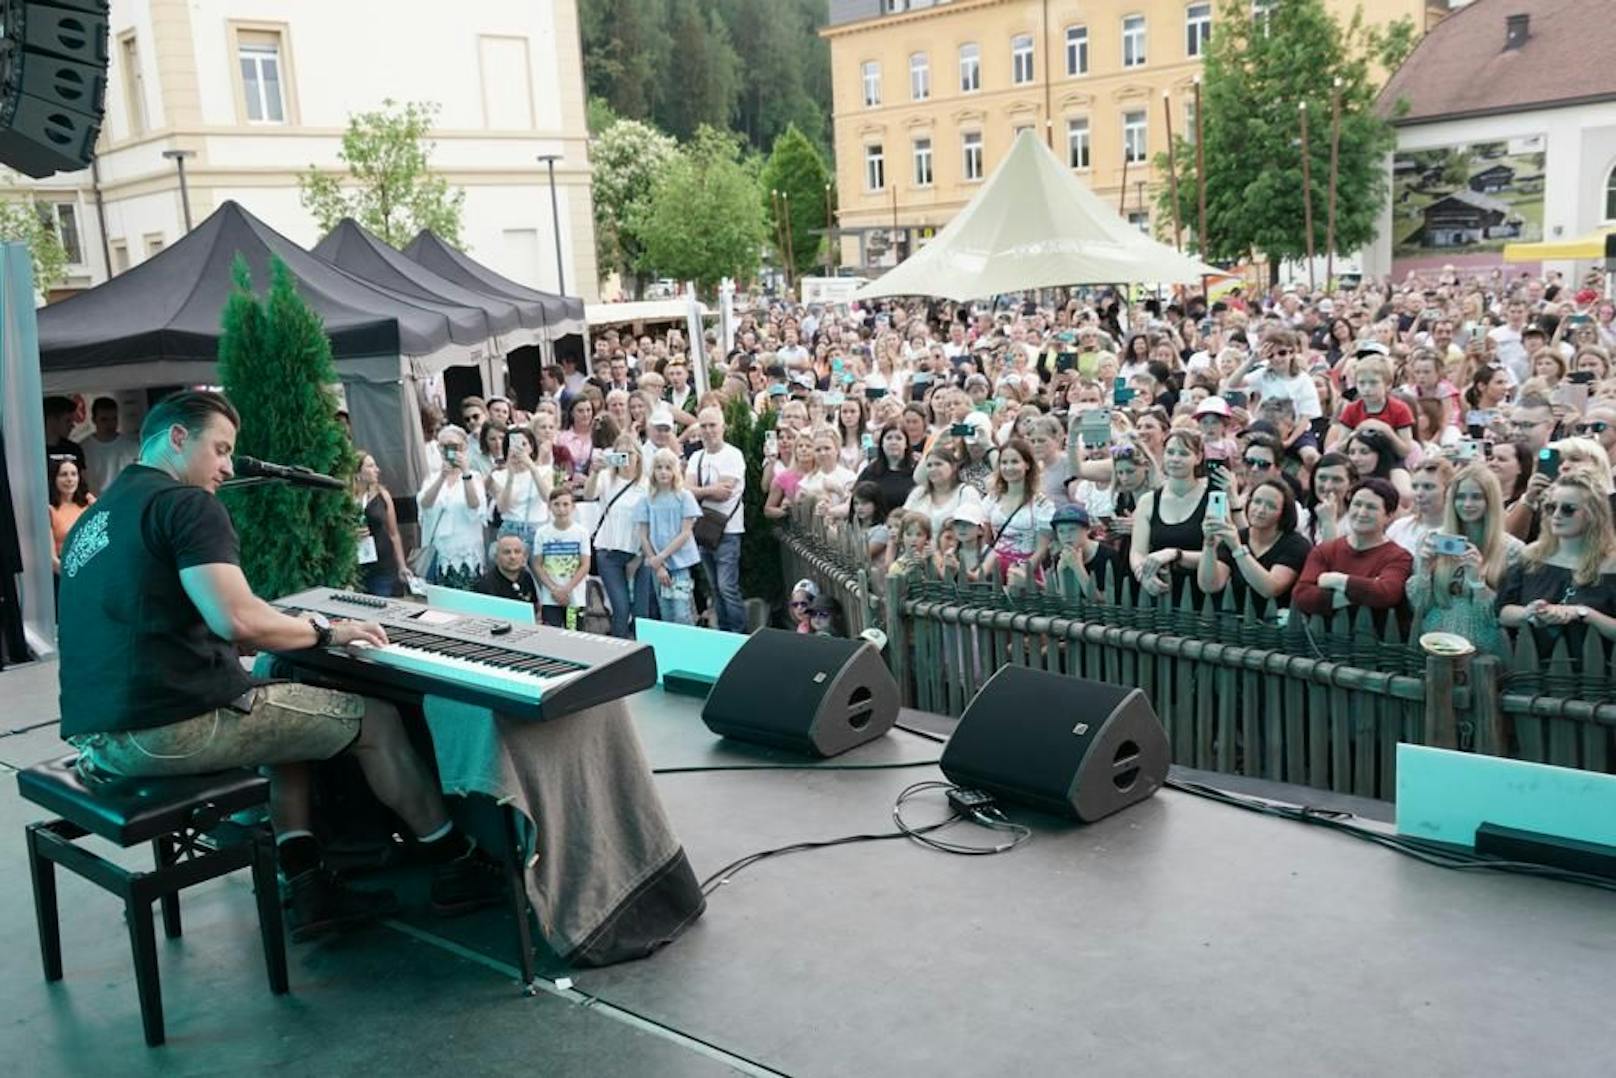 Andreas Gabalier stellte am Rathausplatz von Bruneck nicht nur seine neue Single "Südtirol" vor, sondern schwang auch den Kochlöffel.